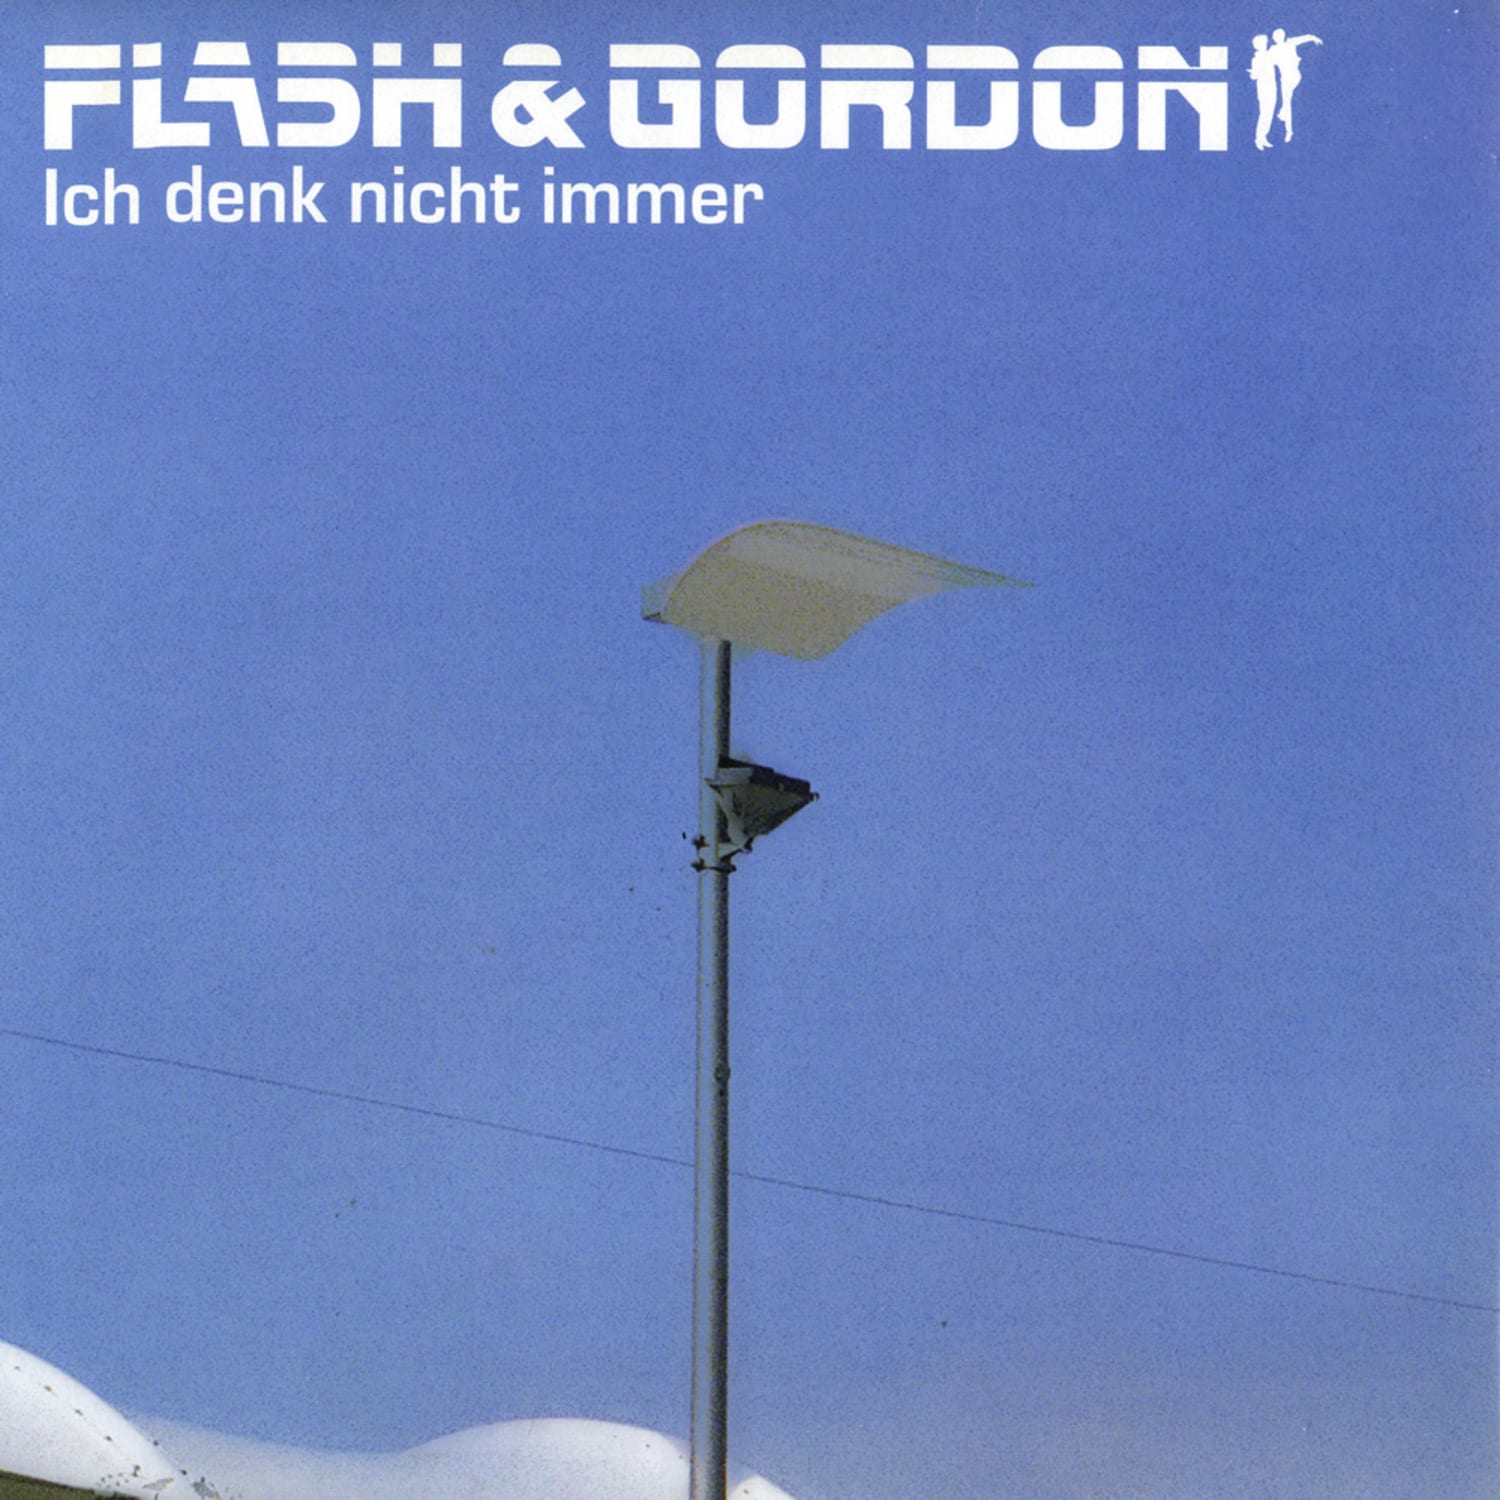 Flash & Gordon - ICH DENK NICHT IMMER